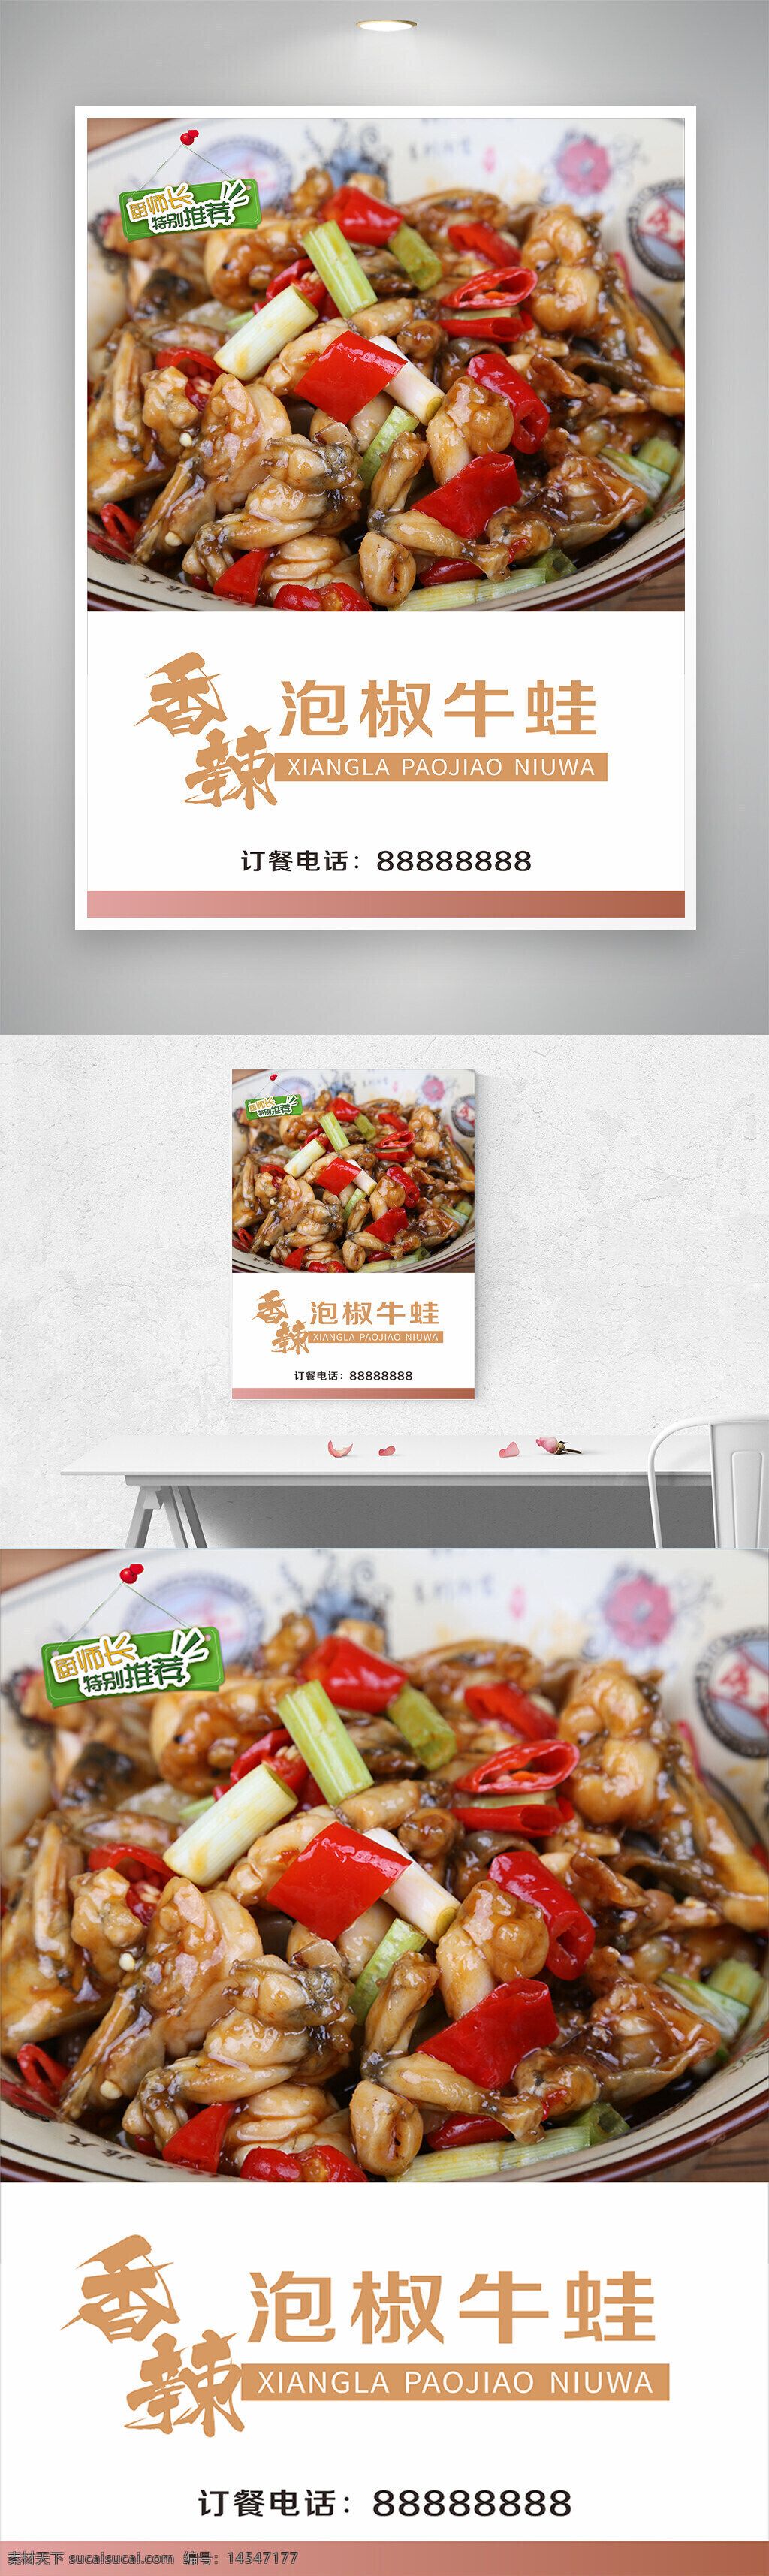 香辣泡椒牛蛙海报 中国特色美食 牛蛙 泡椒 辣椒